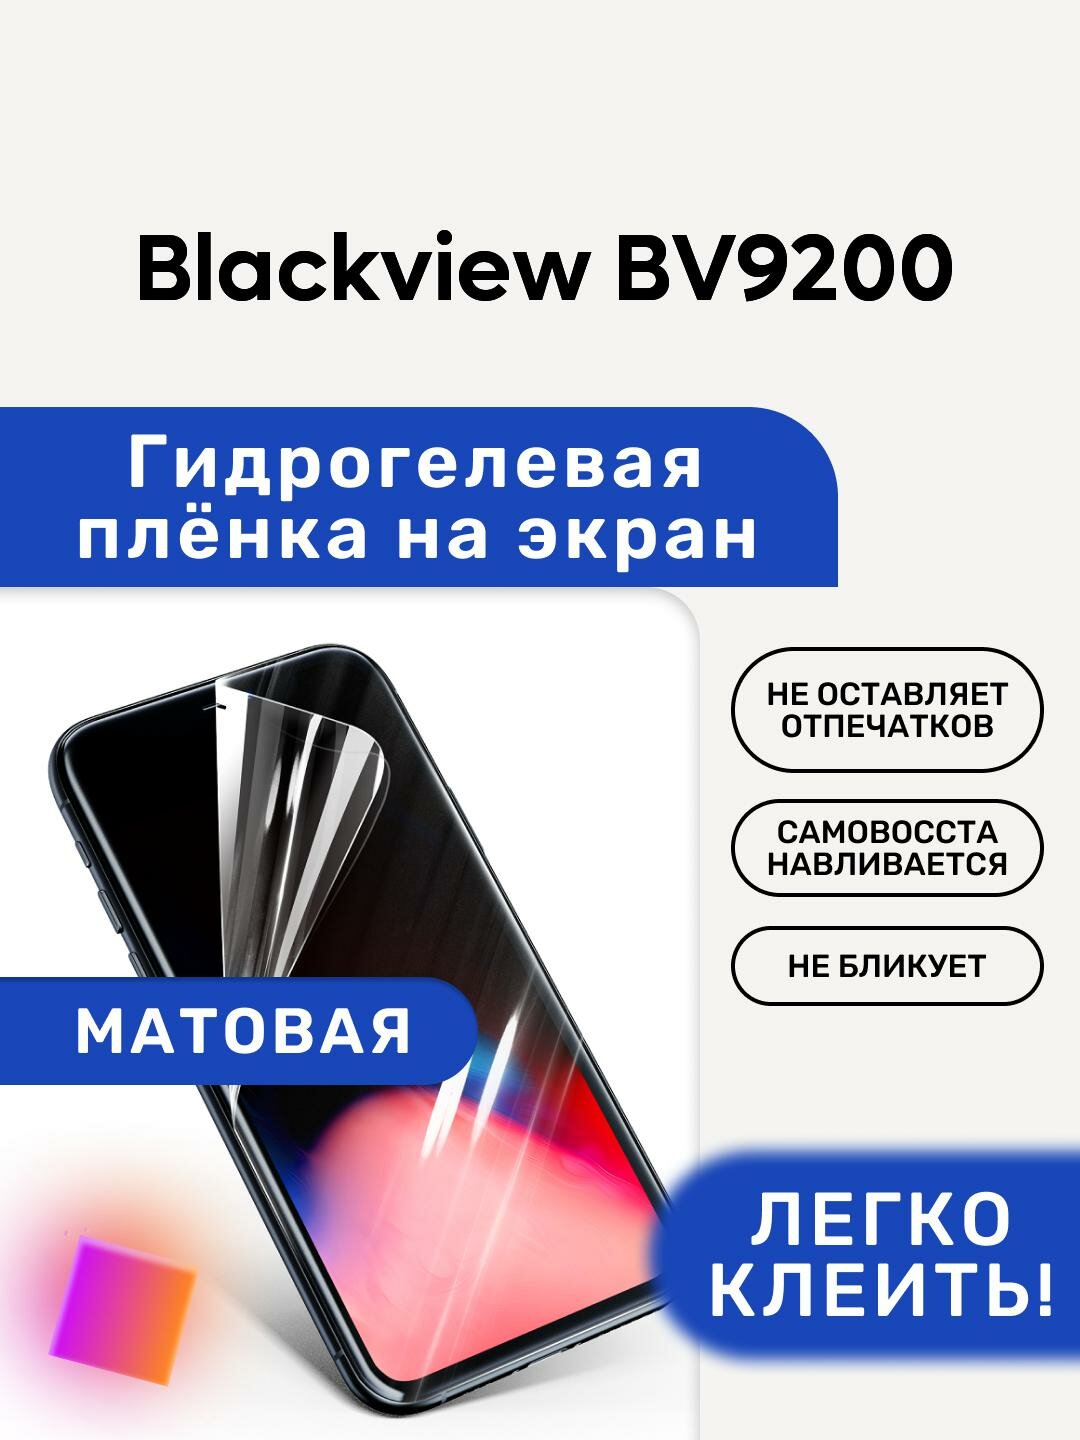 Матовая Гидрогелевая плёнка, полиуретановая, защита экрана Blackview BV9200